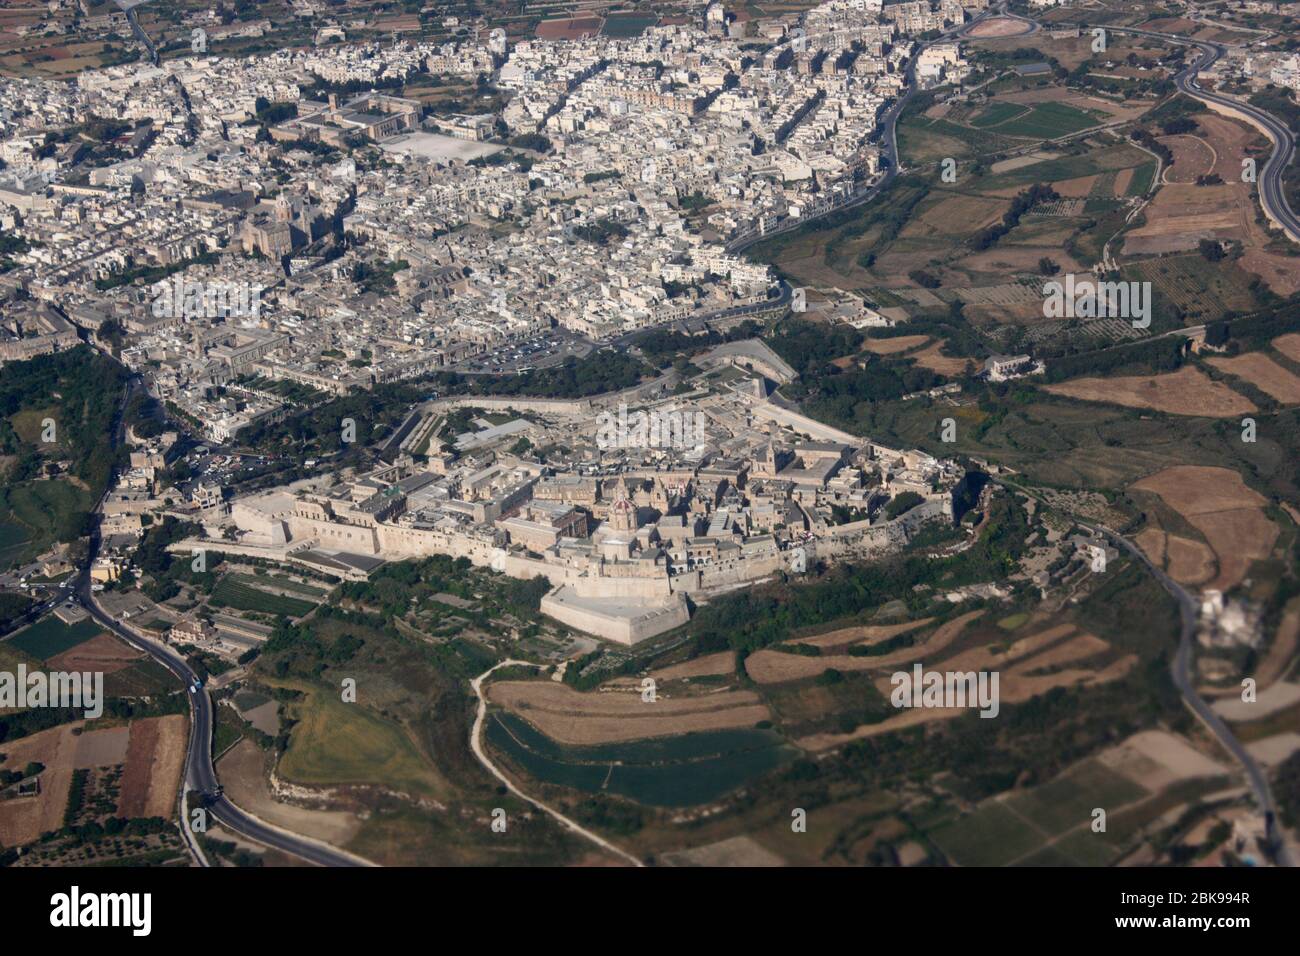 La histórica ciudad amurallada de Mdina y la vecina ciudad de Rabat en Malta, vista desde el aire. Viajar por Europa. Vista aérea. Foto de stock